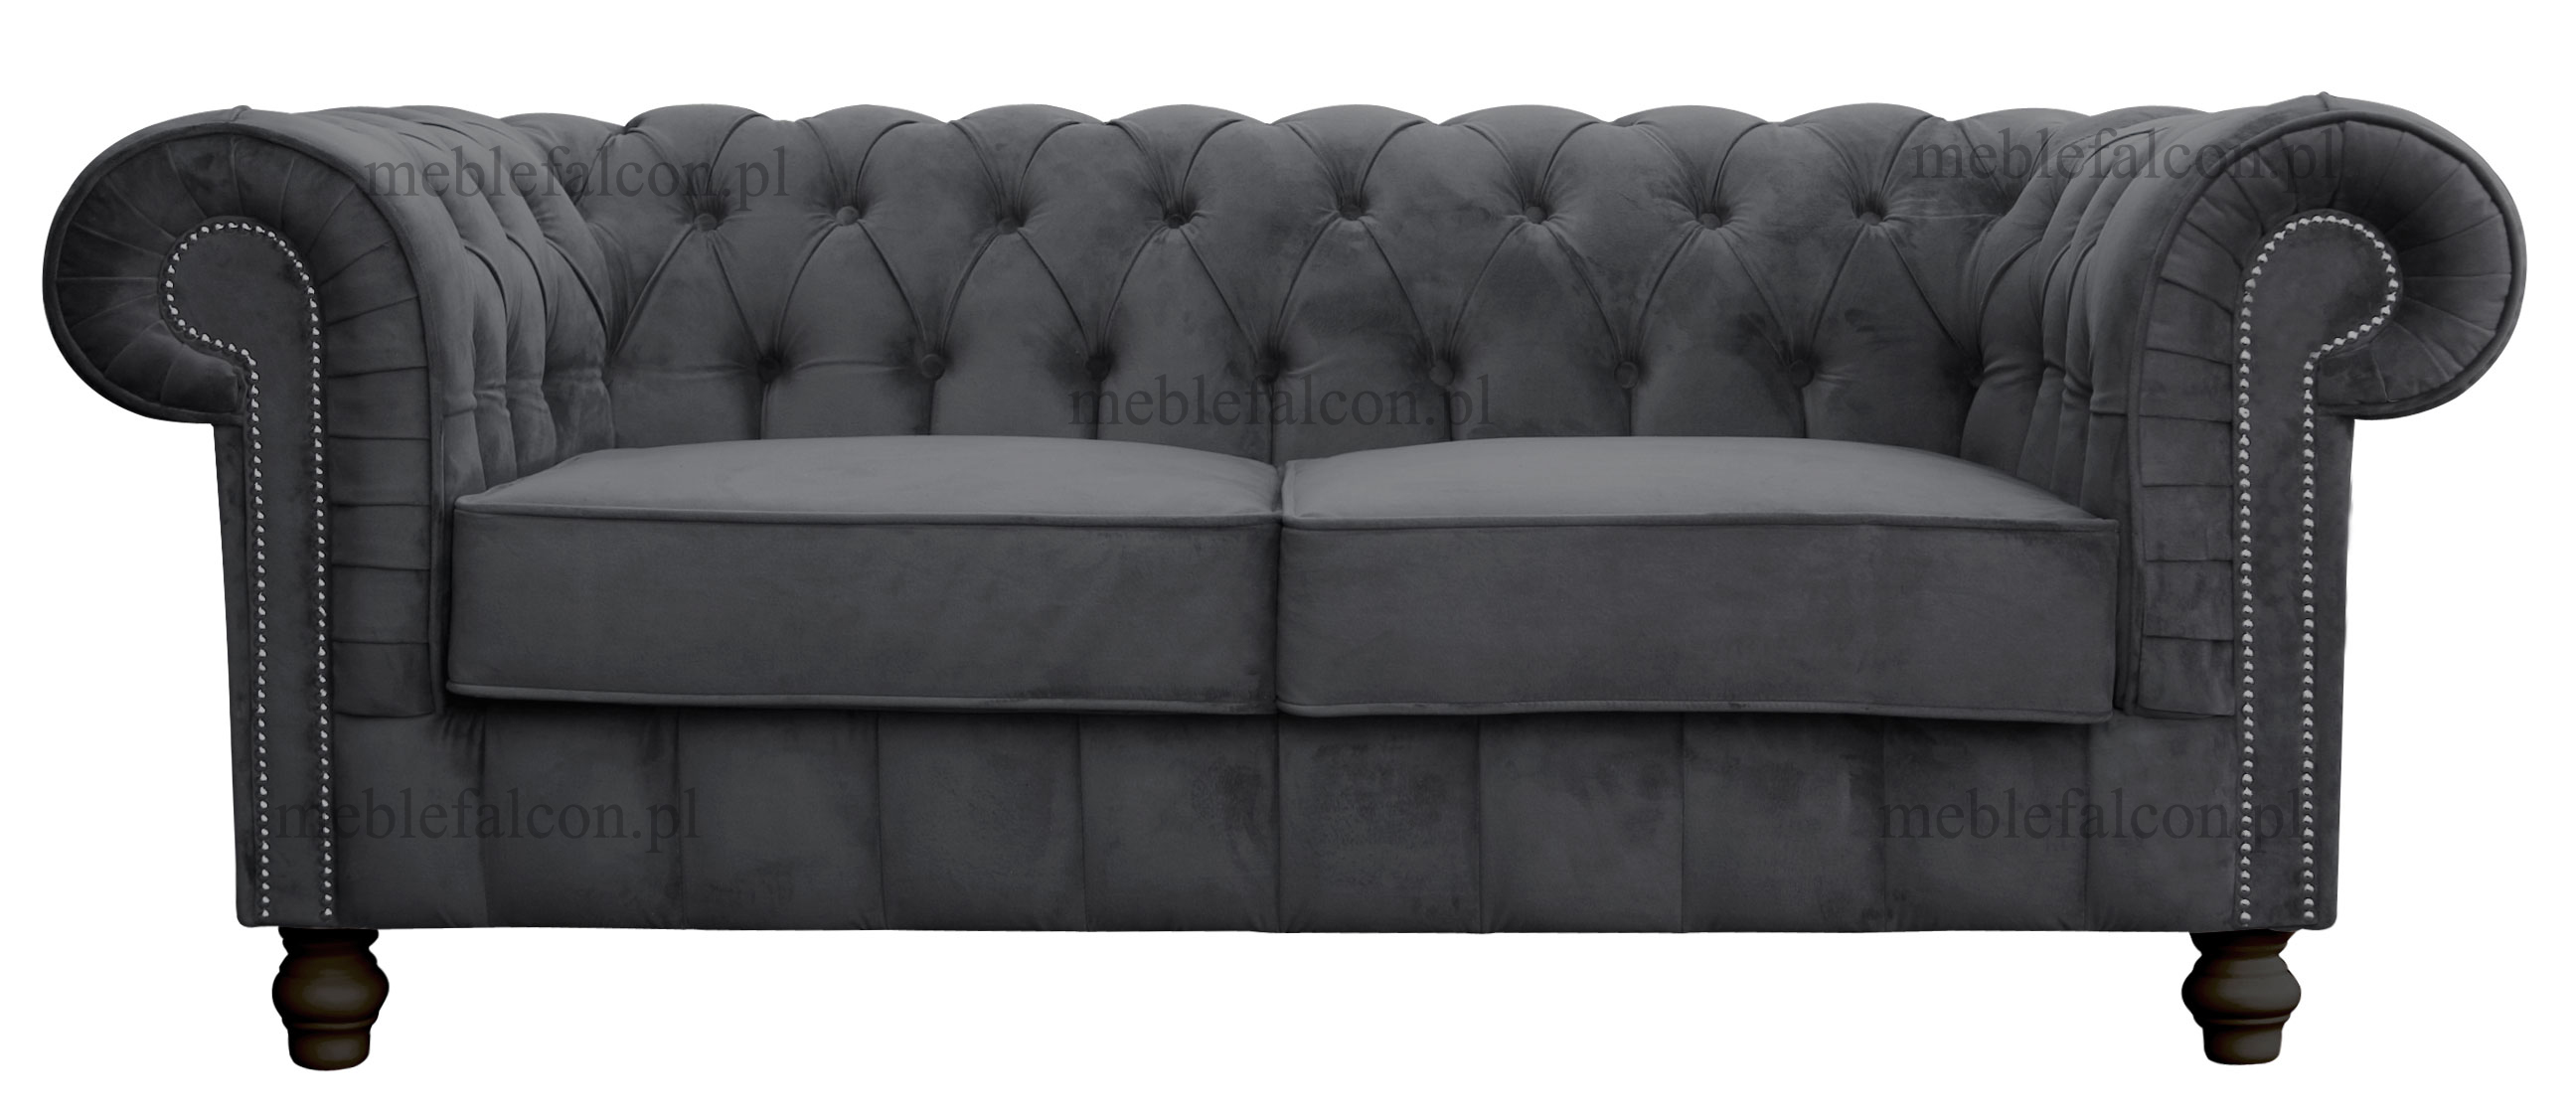 subtelna szara wyszukana sofa chesterfield z wygodnym siedziskiem perfekcyjnie wykonanym pikowaniem